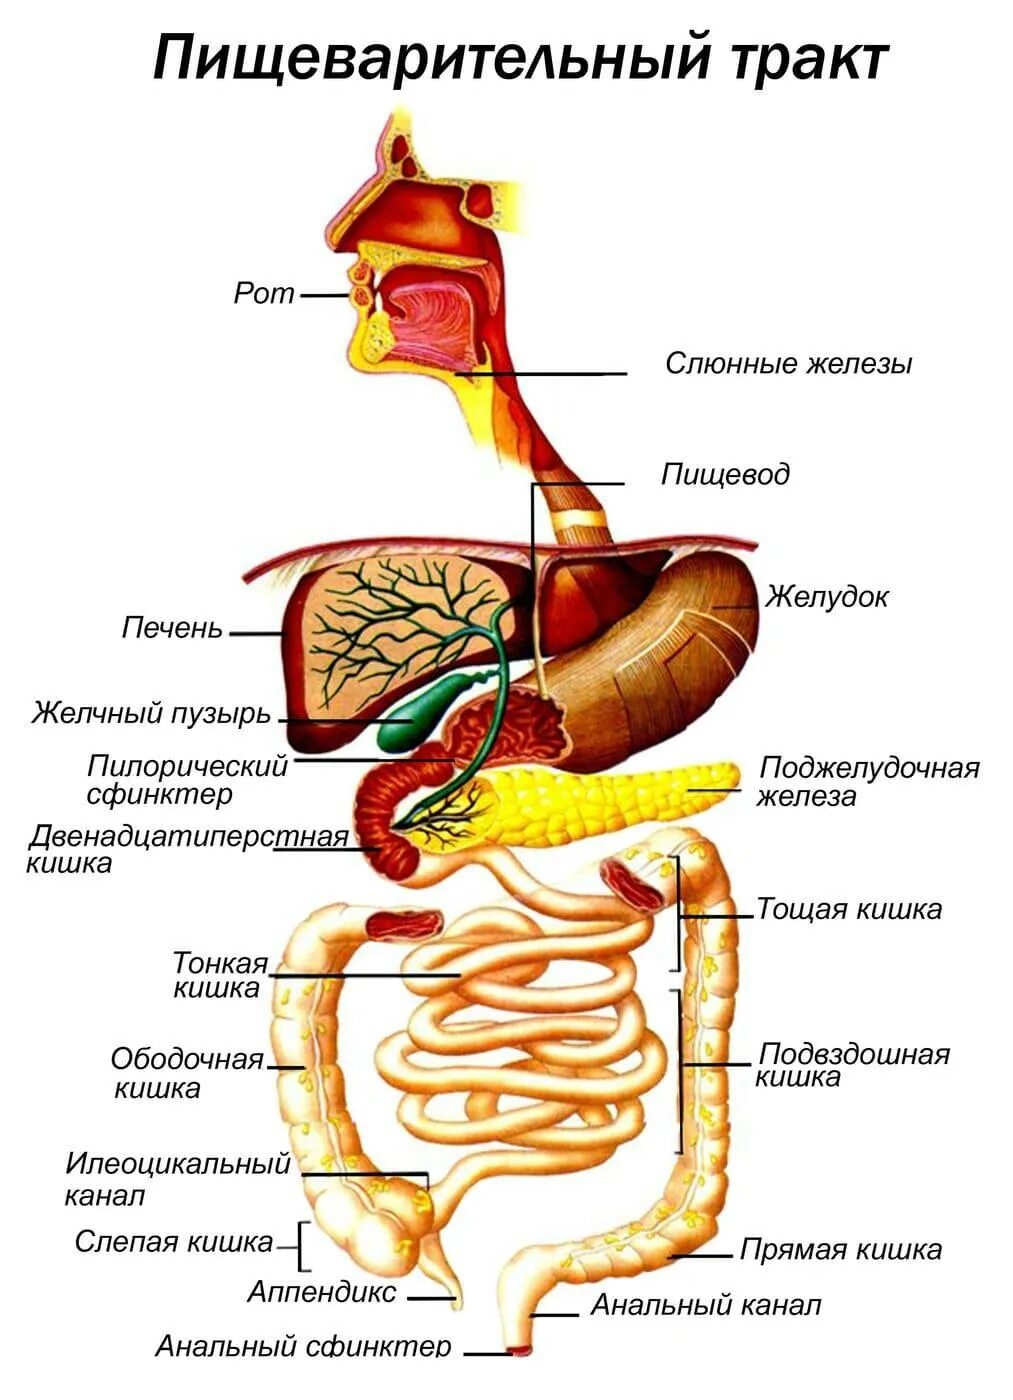 Двенадцатиперстная кишка глотка пищевод. Строение желудочно-кишечного тракта. Схема желудочно-кишечного тракта. Анатомия пищеварительного тракта человека. Строение отделов желудочно-кишечного тракта.